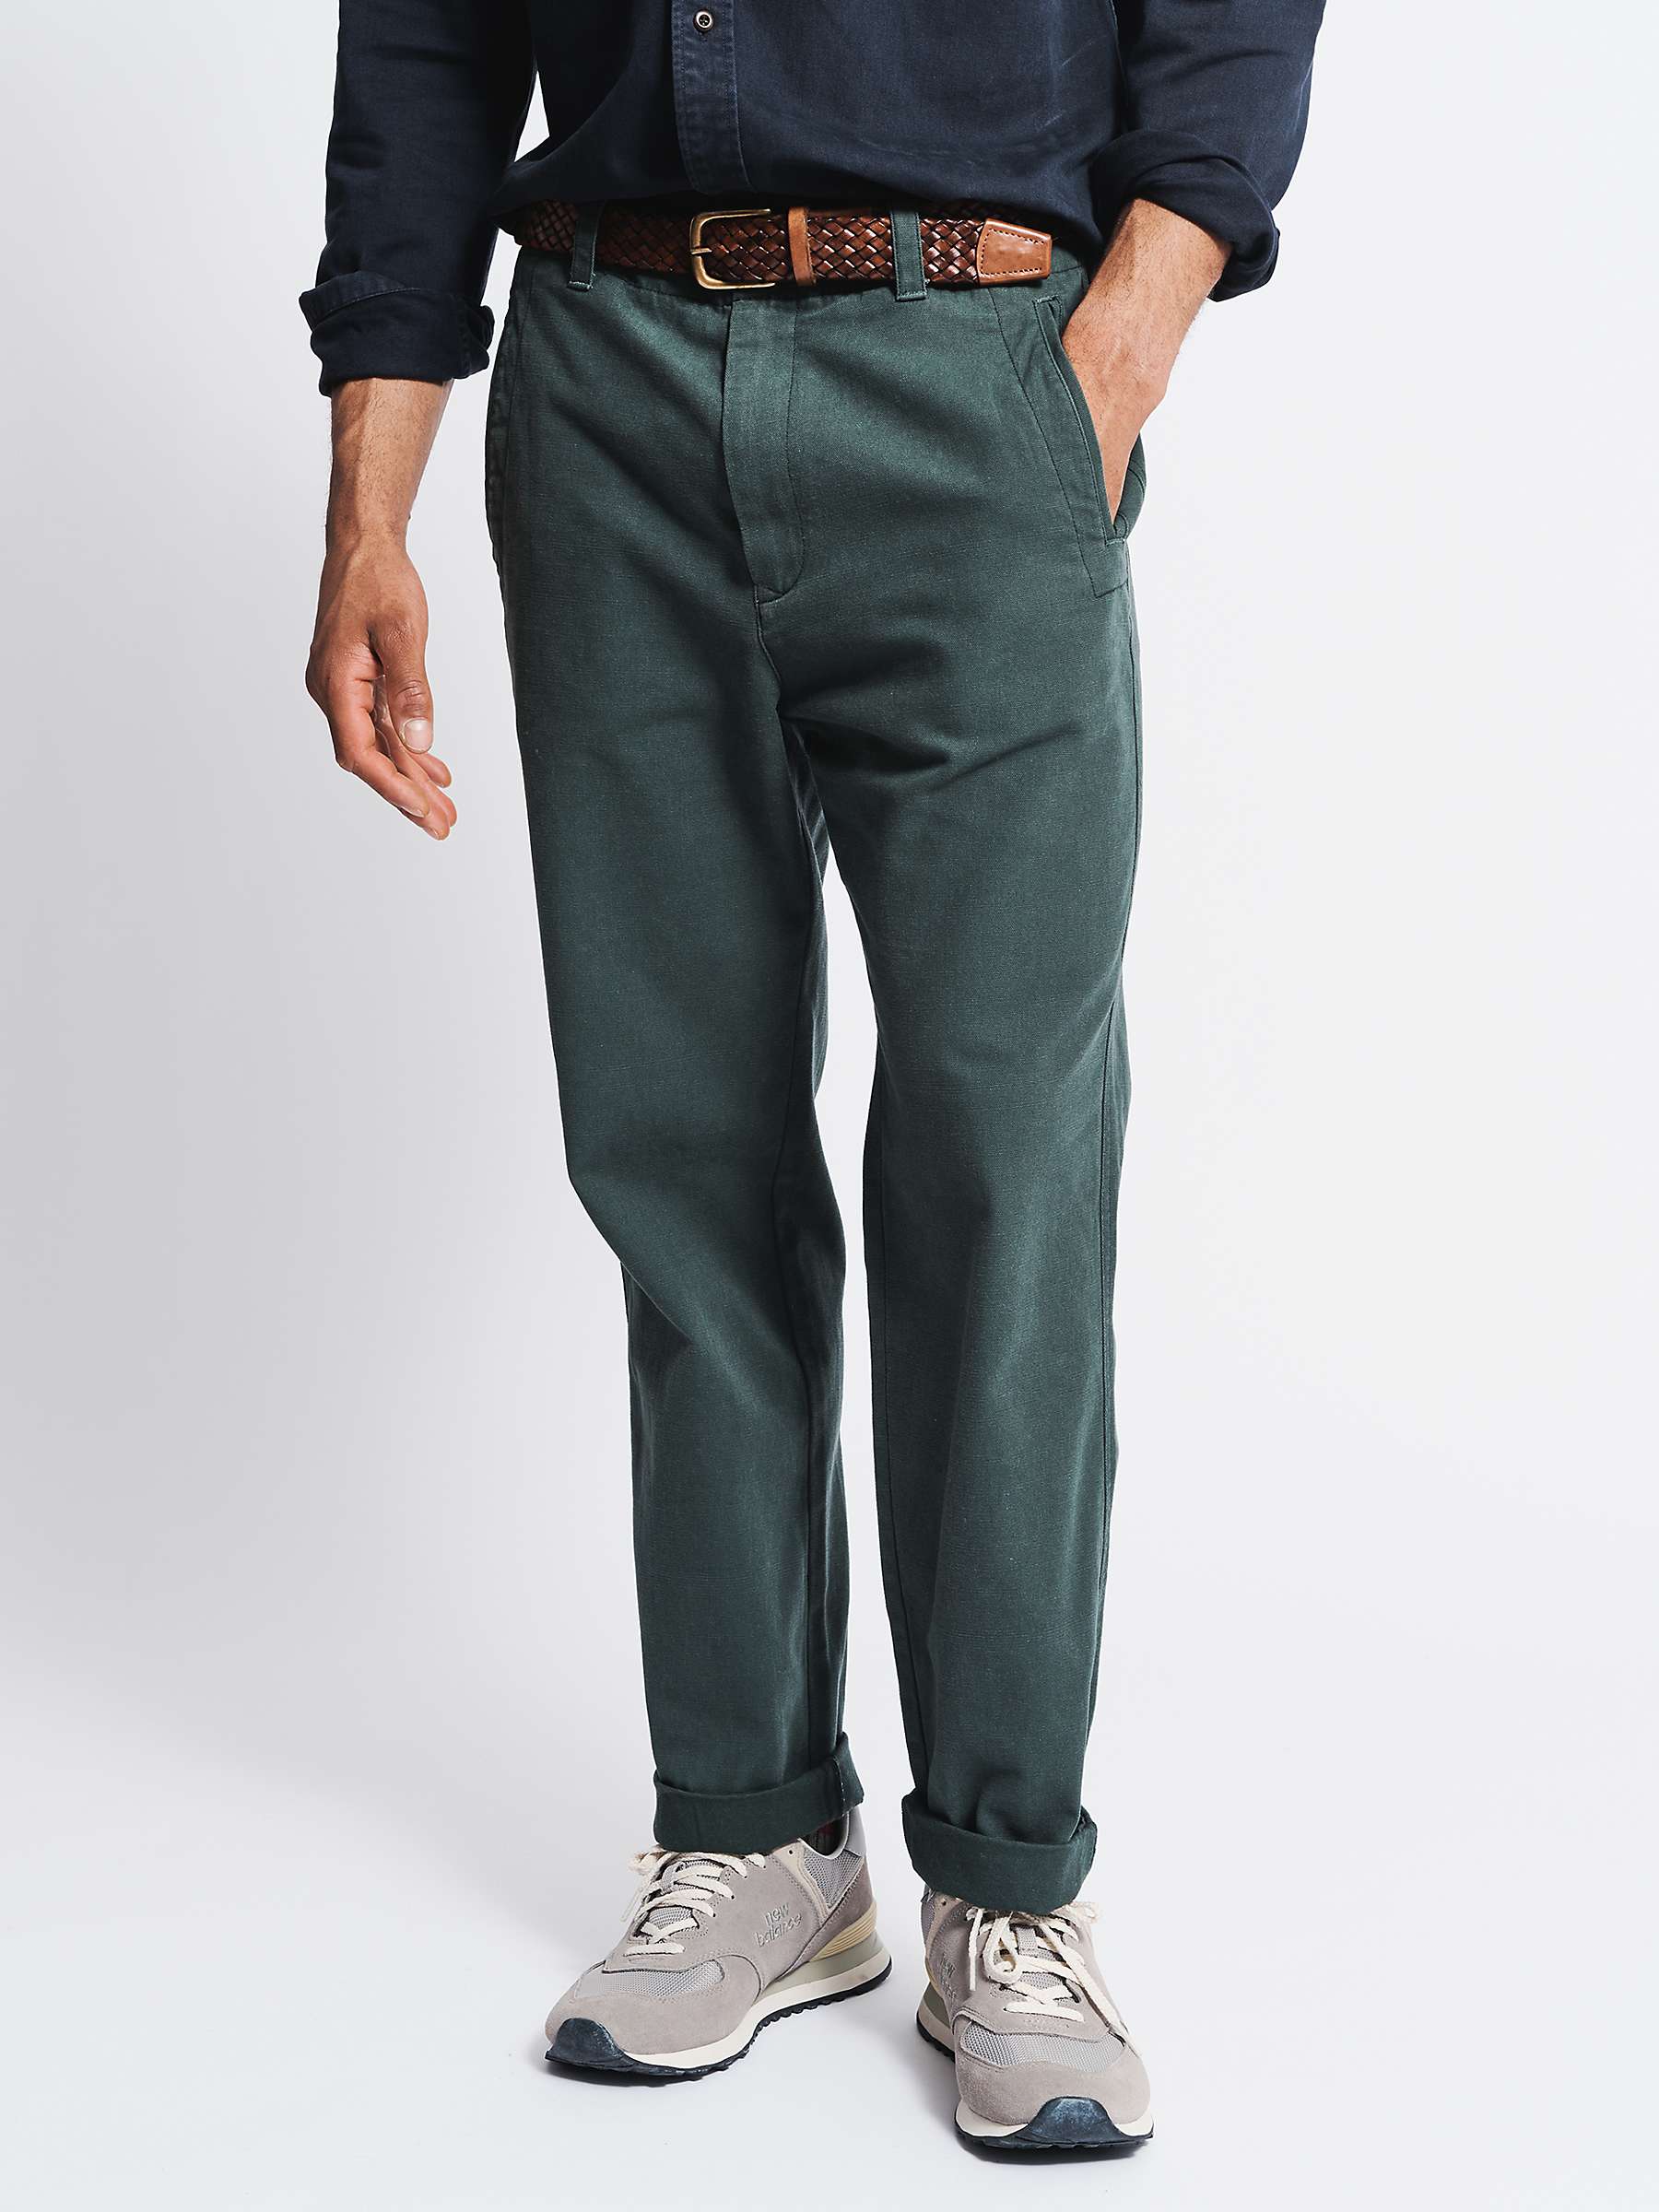 Buy Aubin Nettleton Trousers, Dark Green Online at johnlewis.com